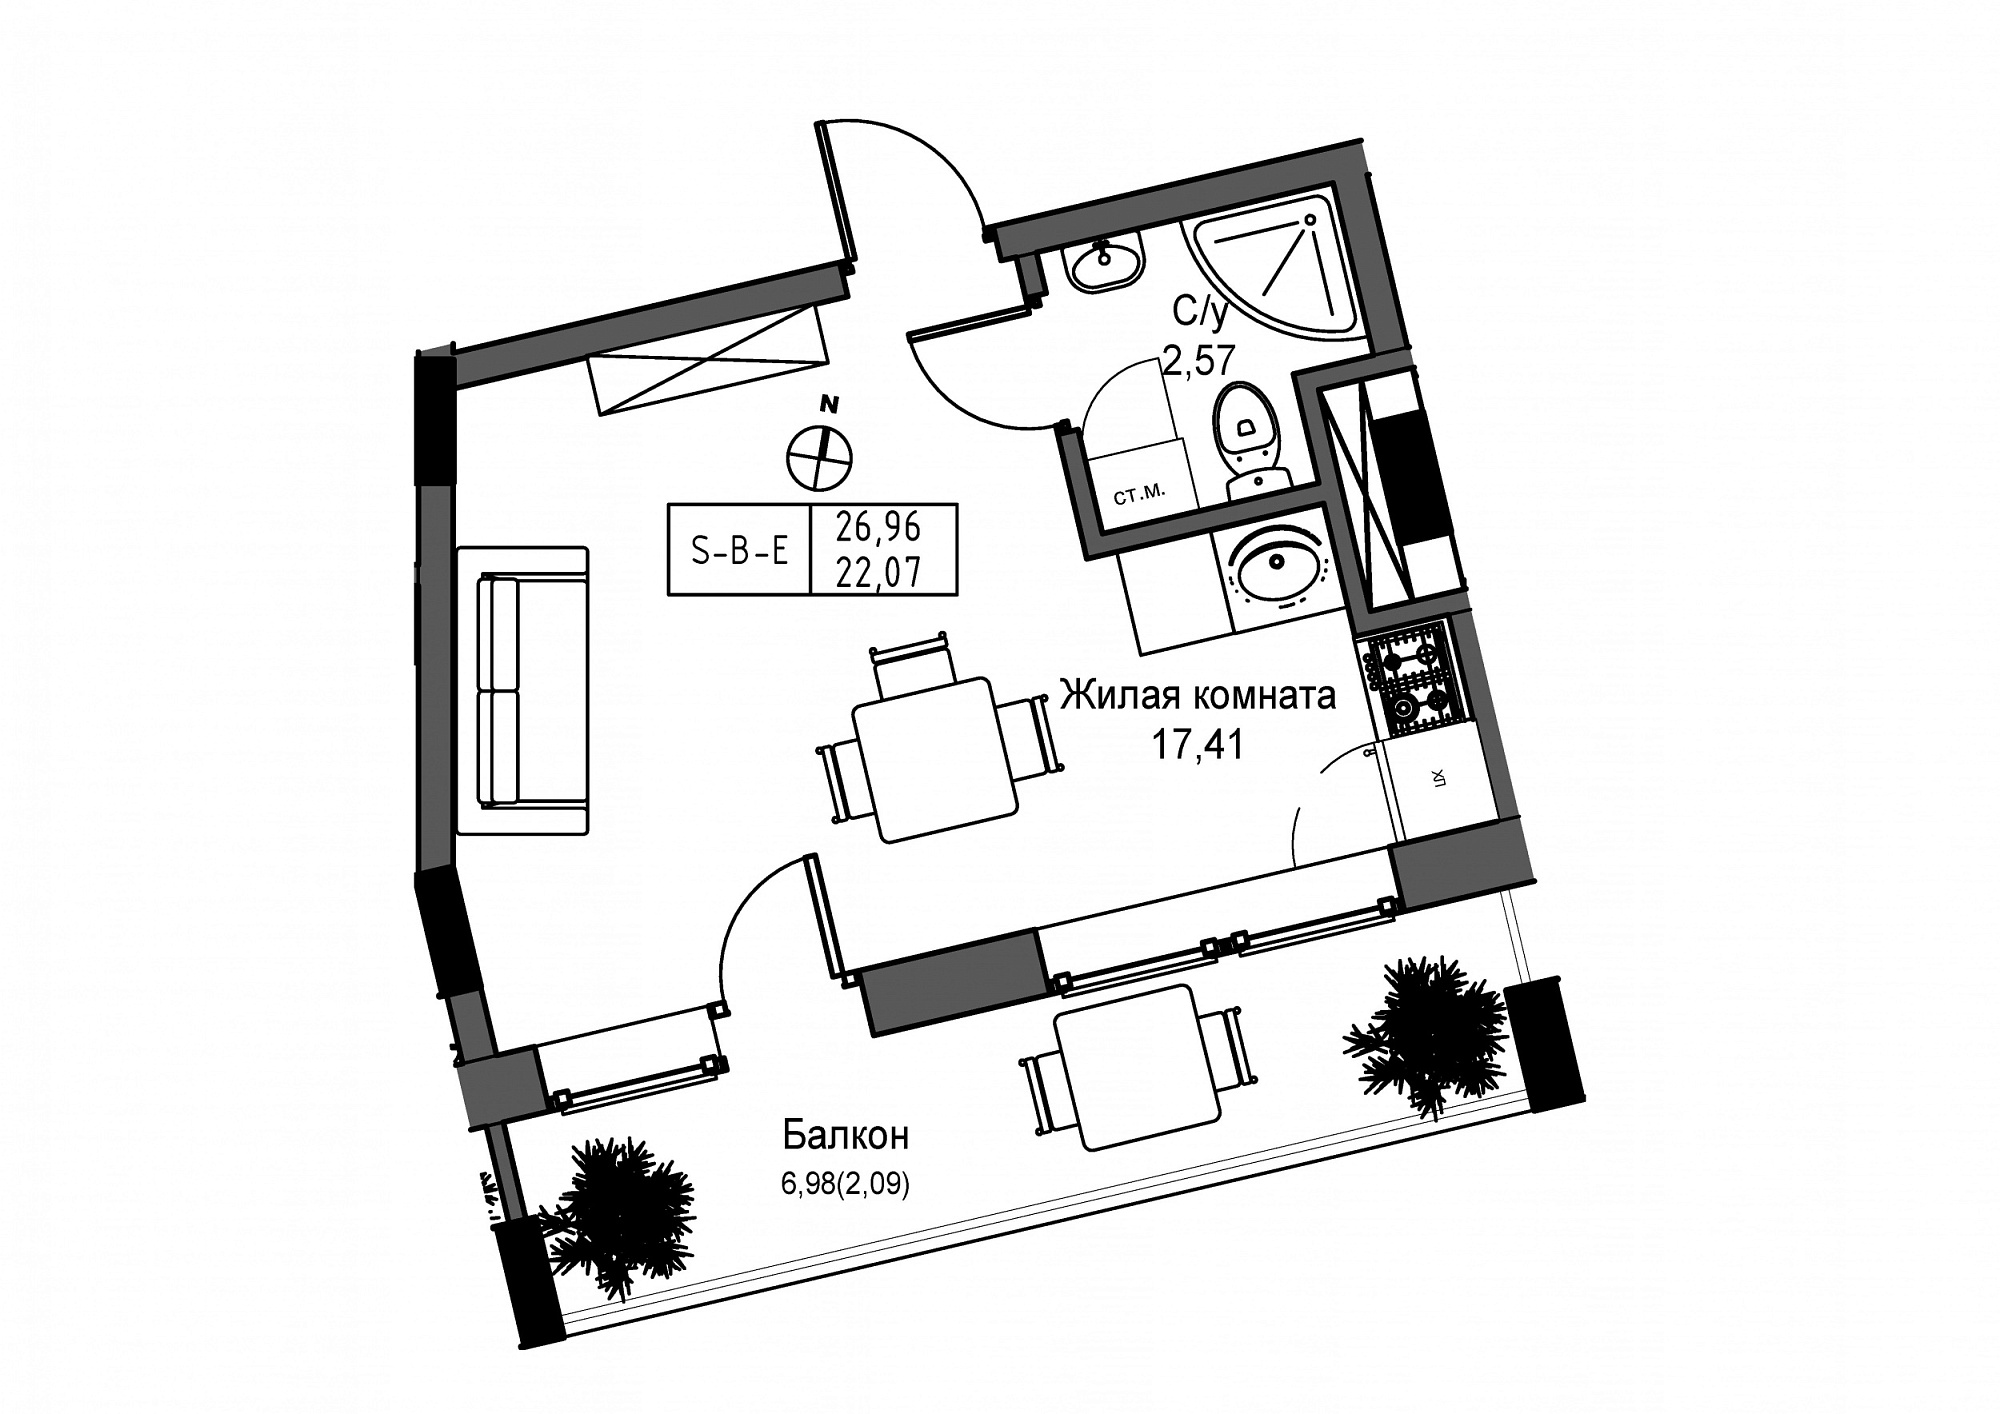 Планировка Smart-квартира площей 22.07м2, UM-004-08/0014.